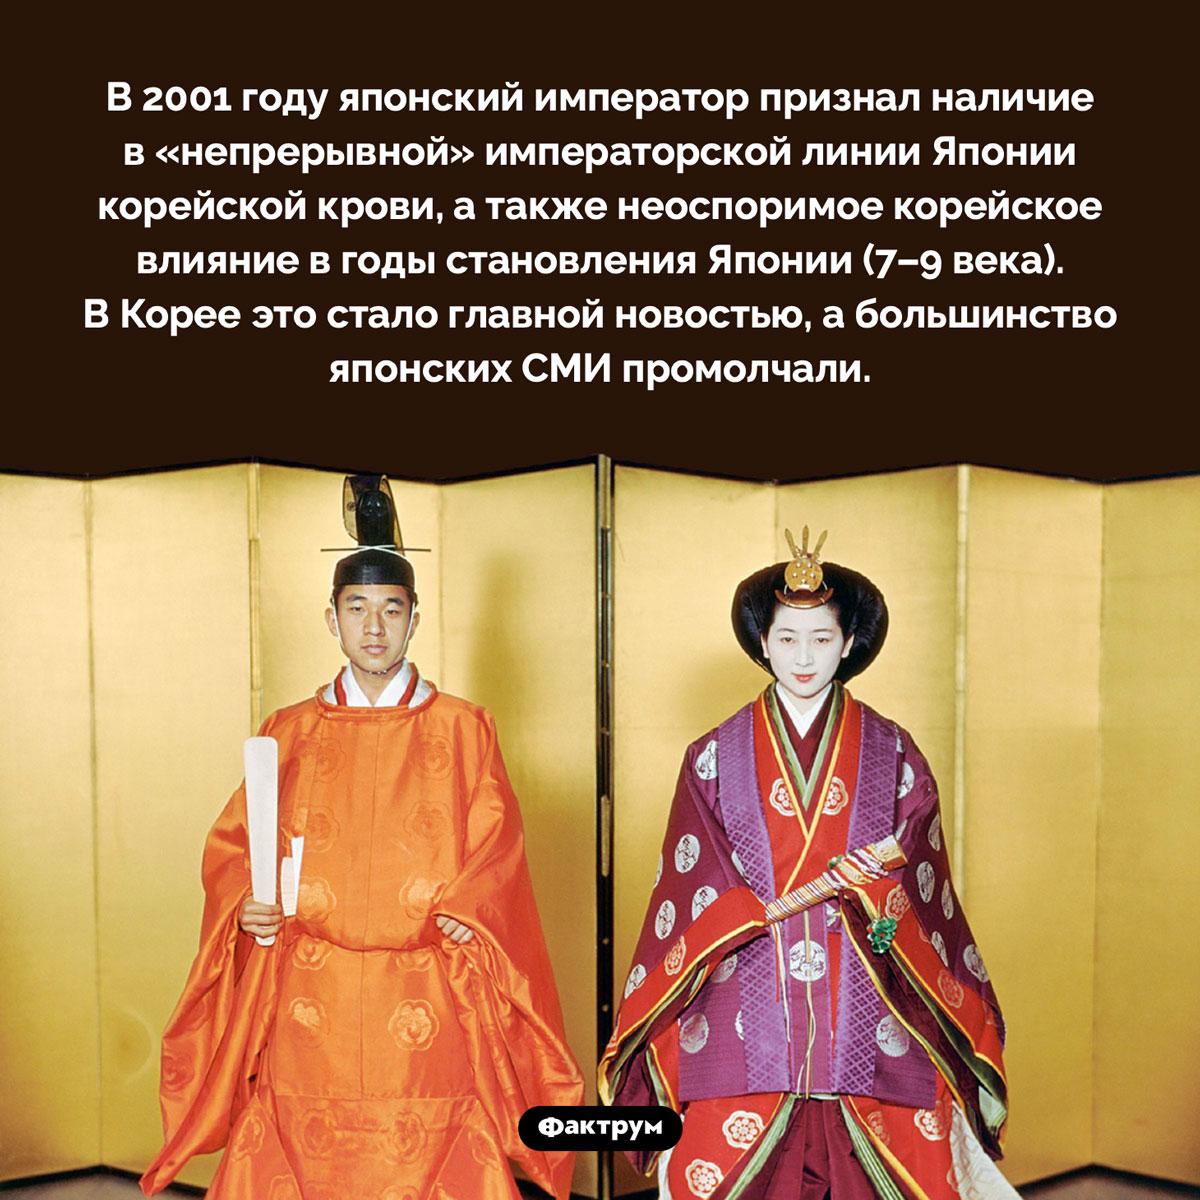 У японских императоров есть корейская кровь